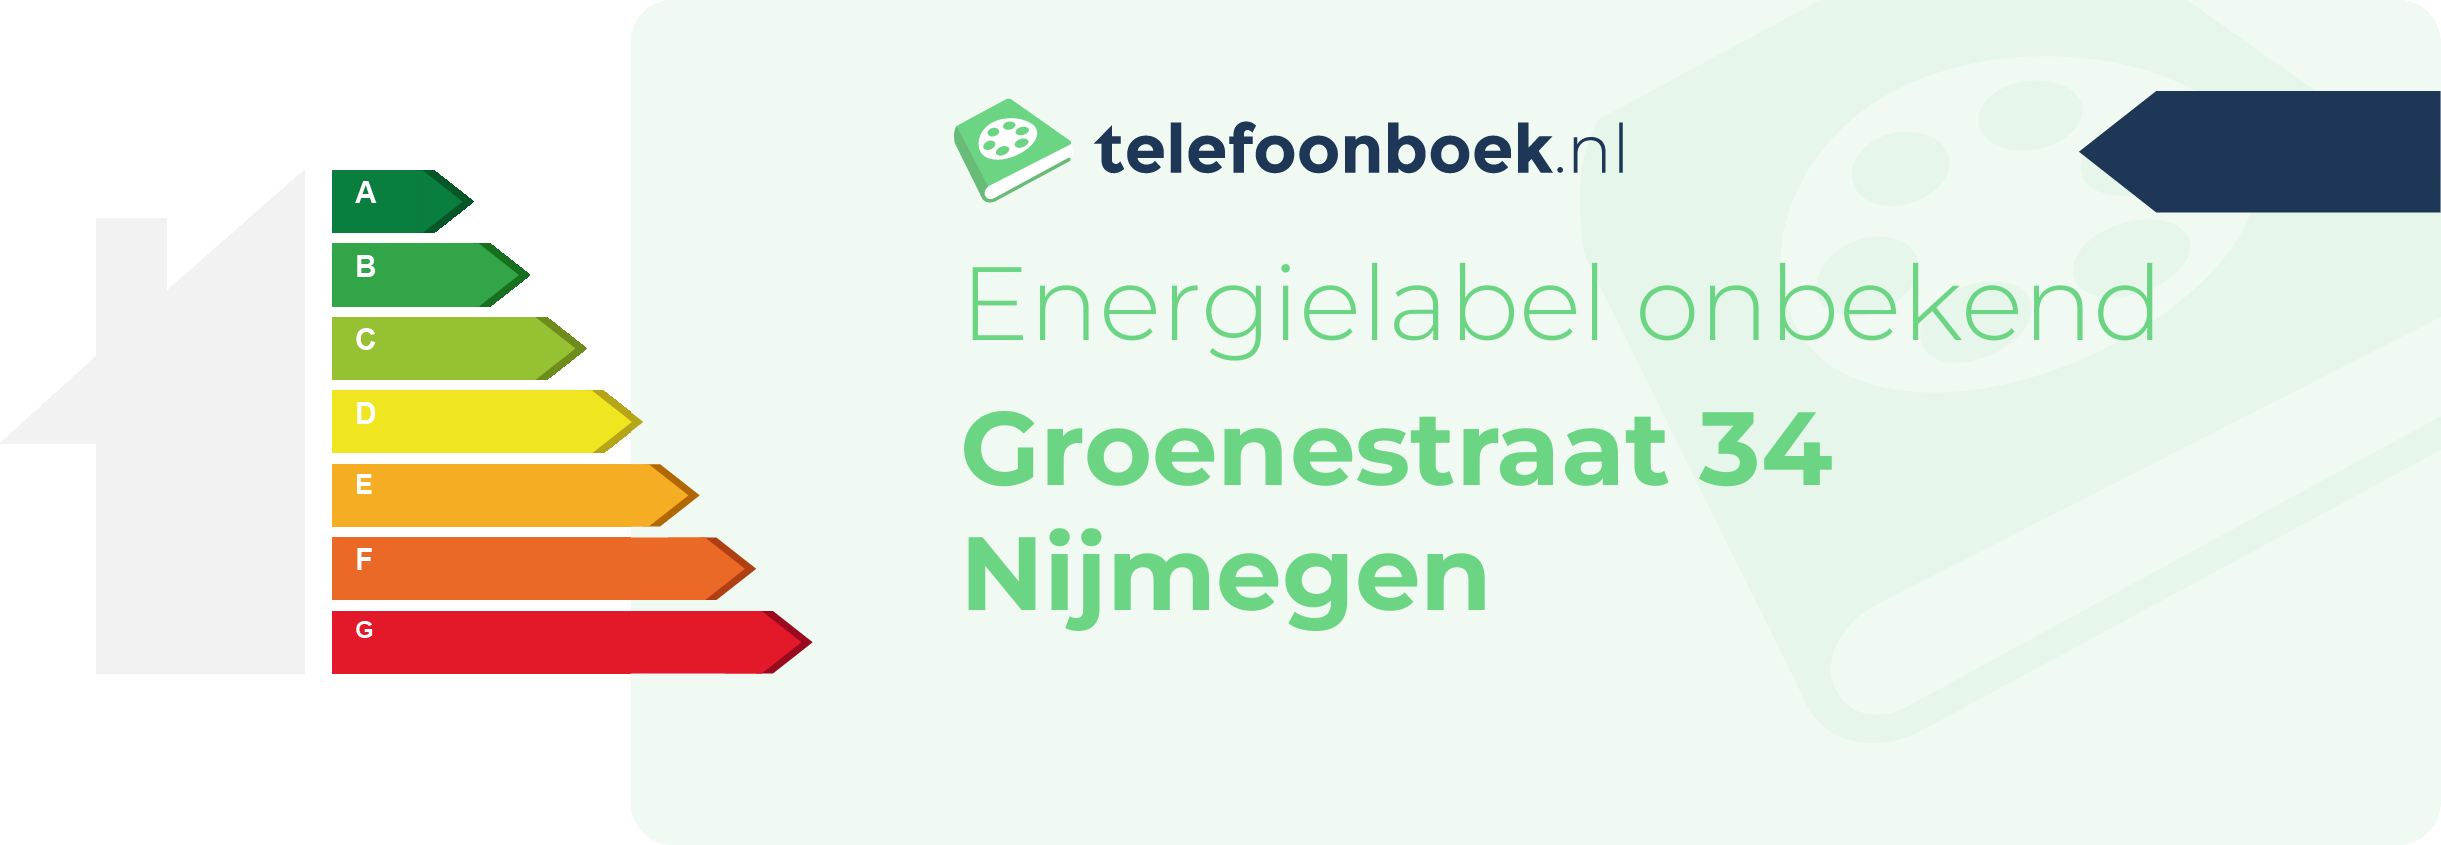 Energielabel Groenestraat 34 Nijmegen